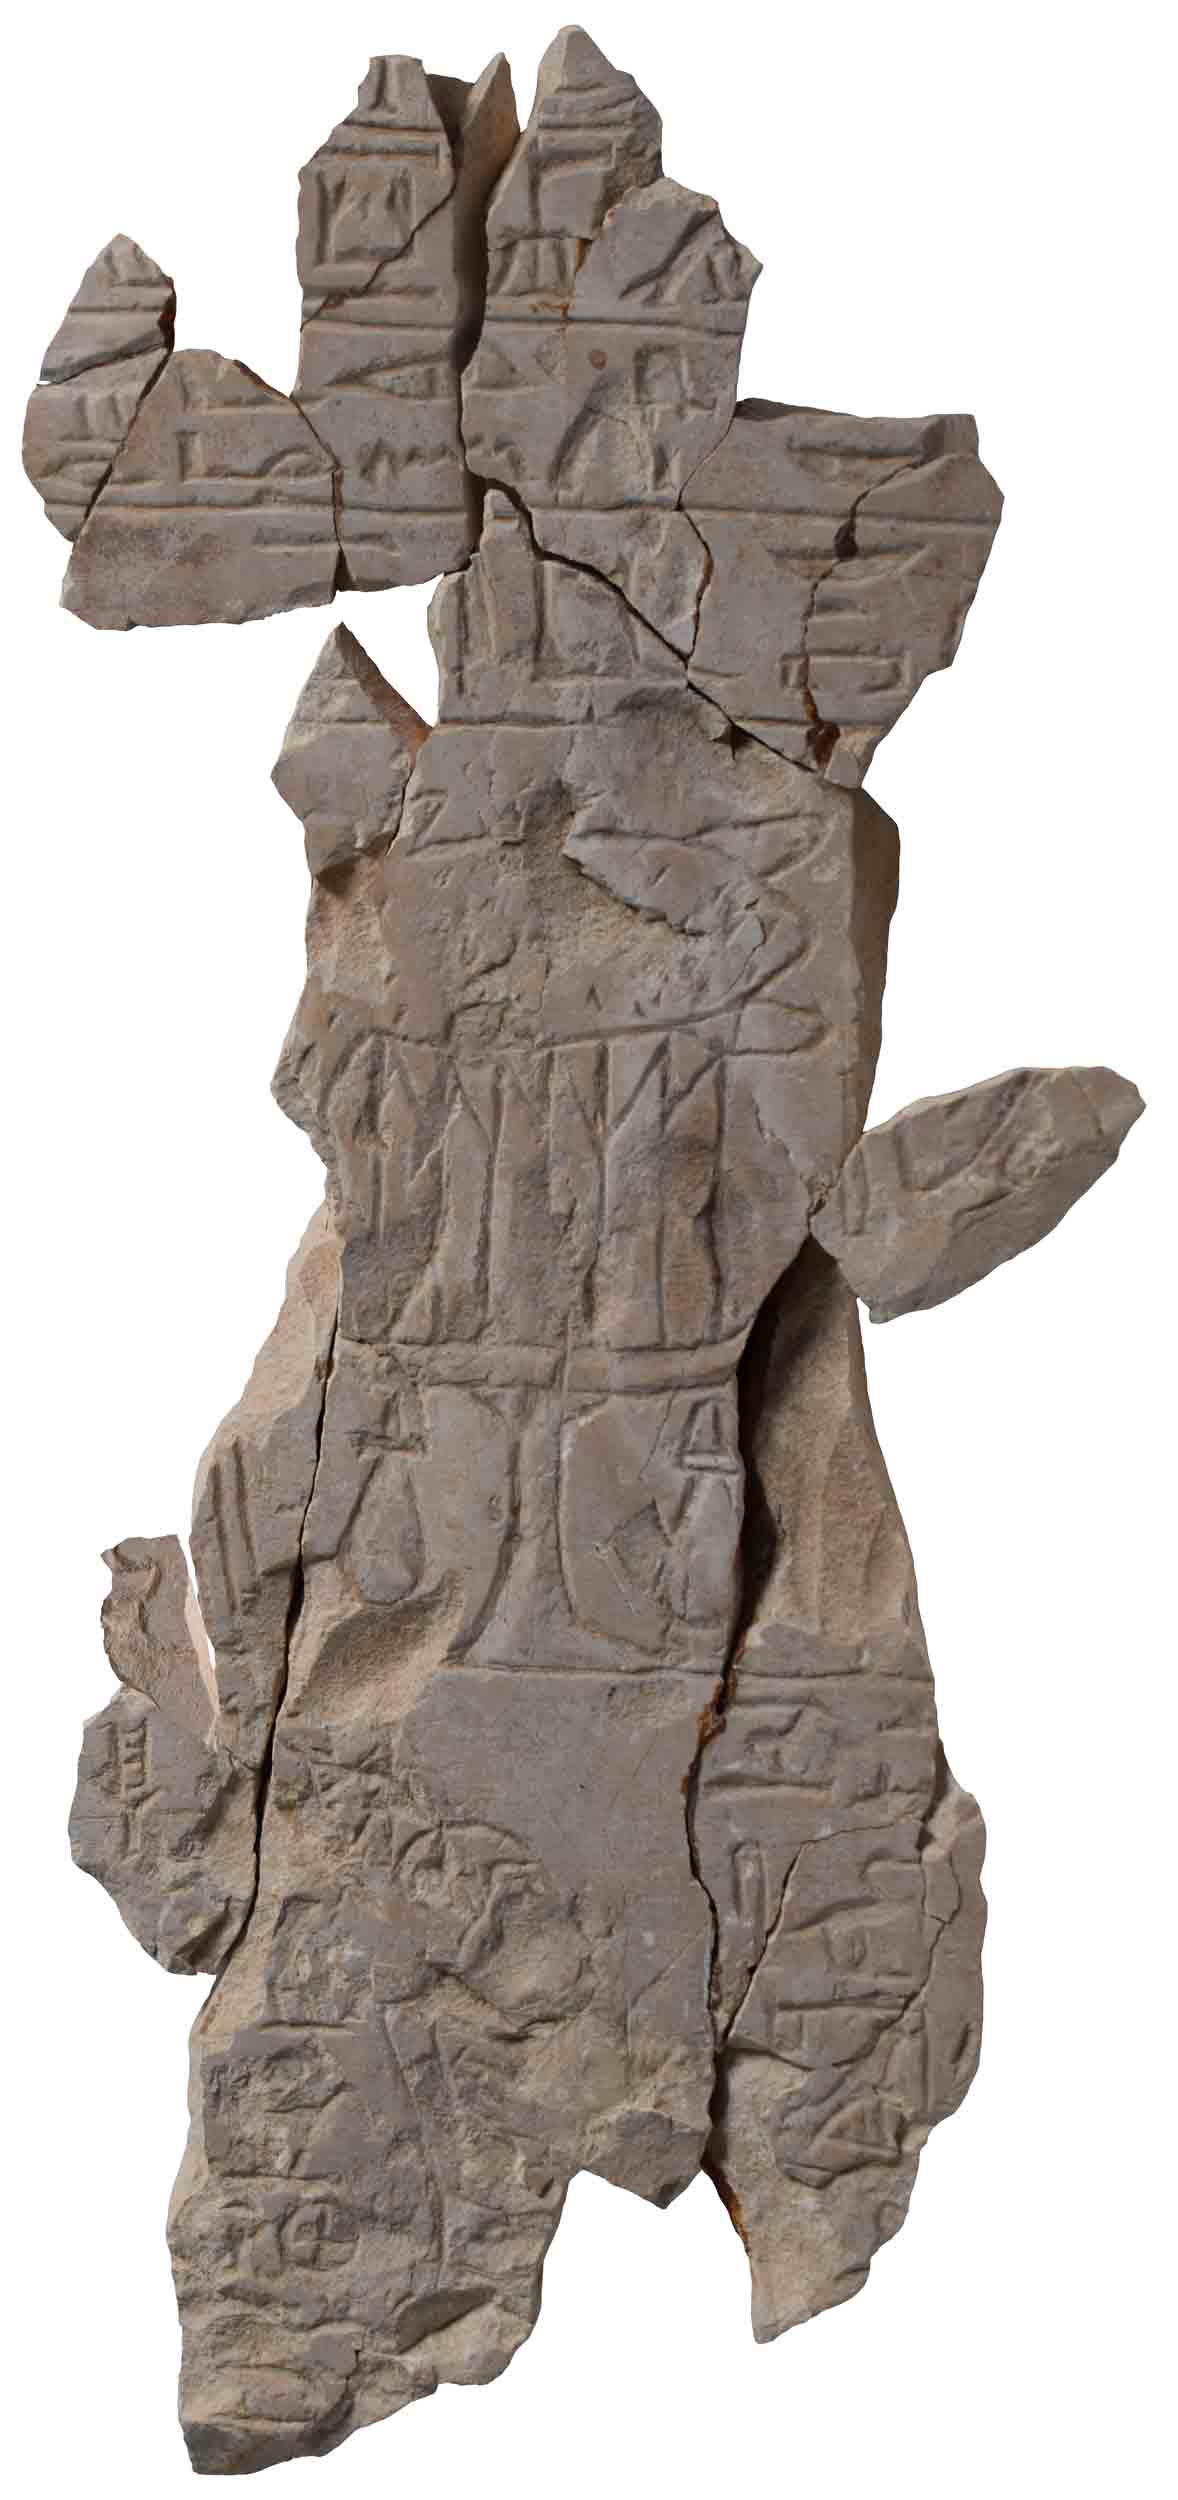 Image for: Fragmentary stela